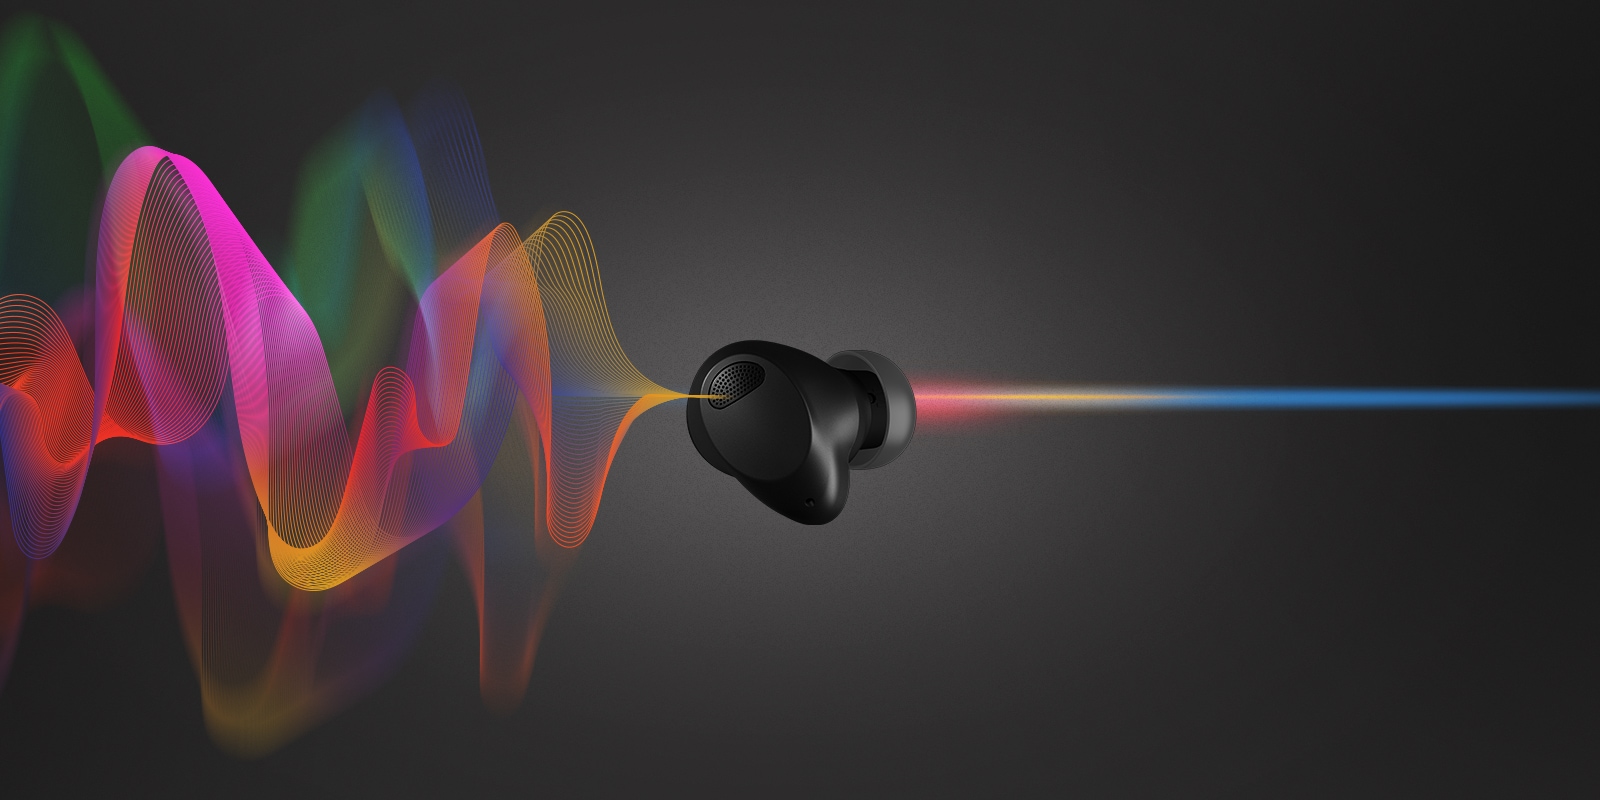 TONE Free T90S : LG lance de nouveaux écouteurs true wireless dotés de la technologie Dolby Atmos